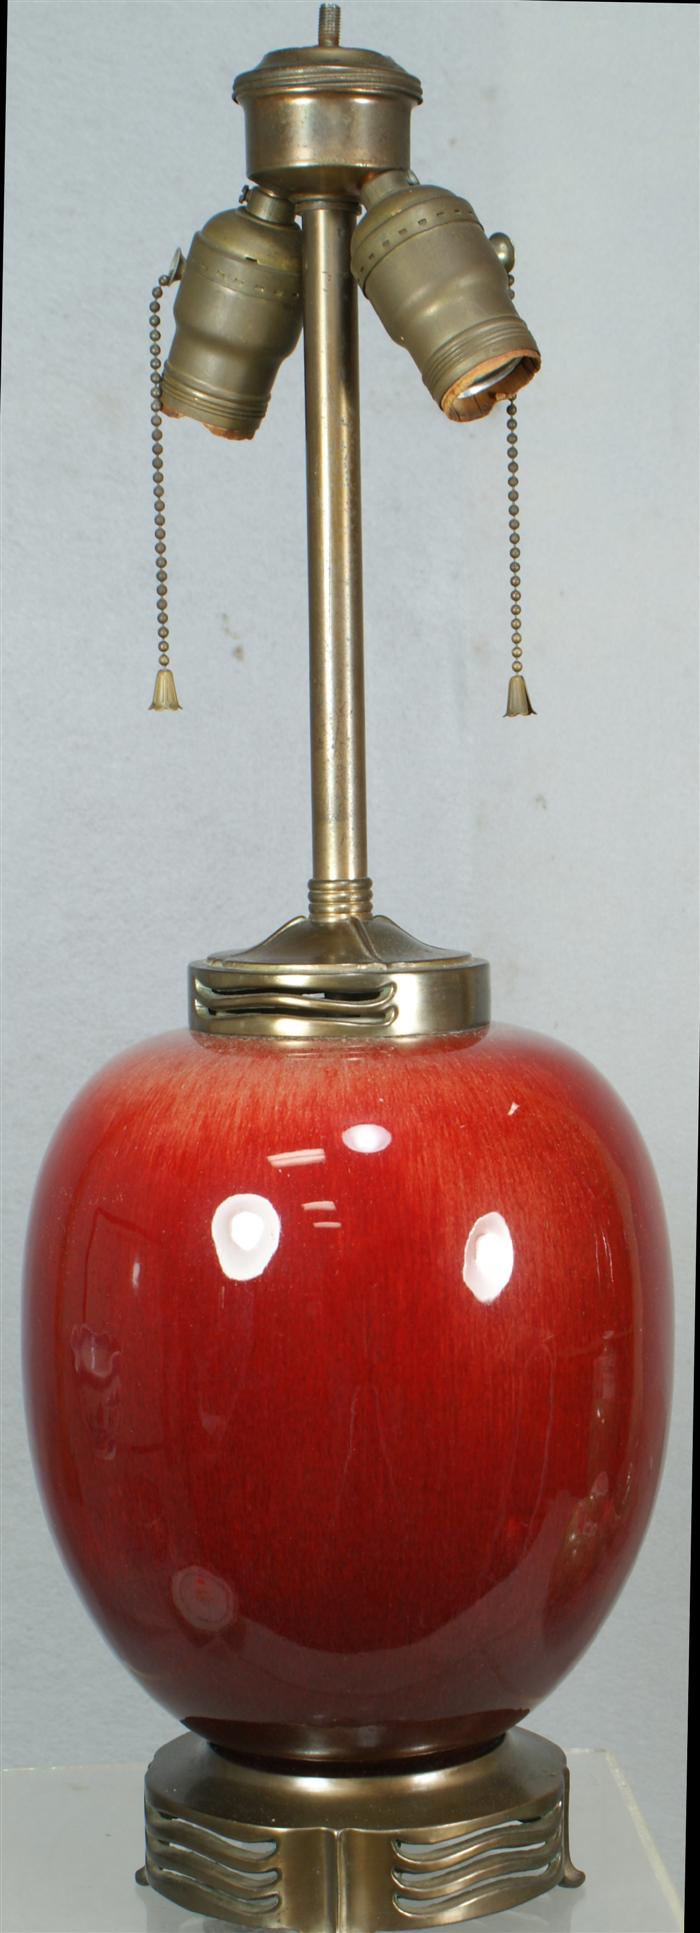 Sang de boeuf Chinese jar mounted